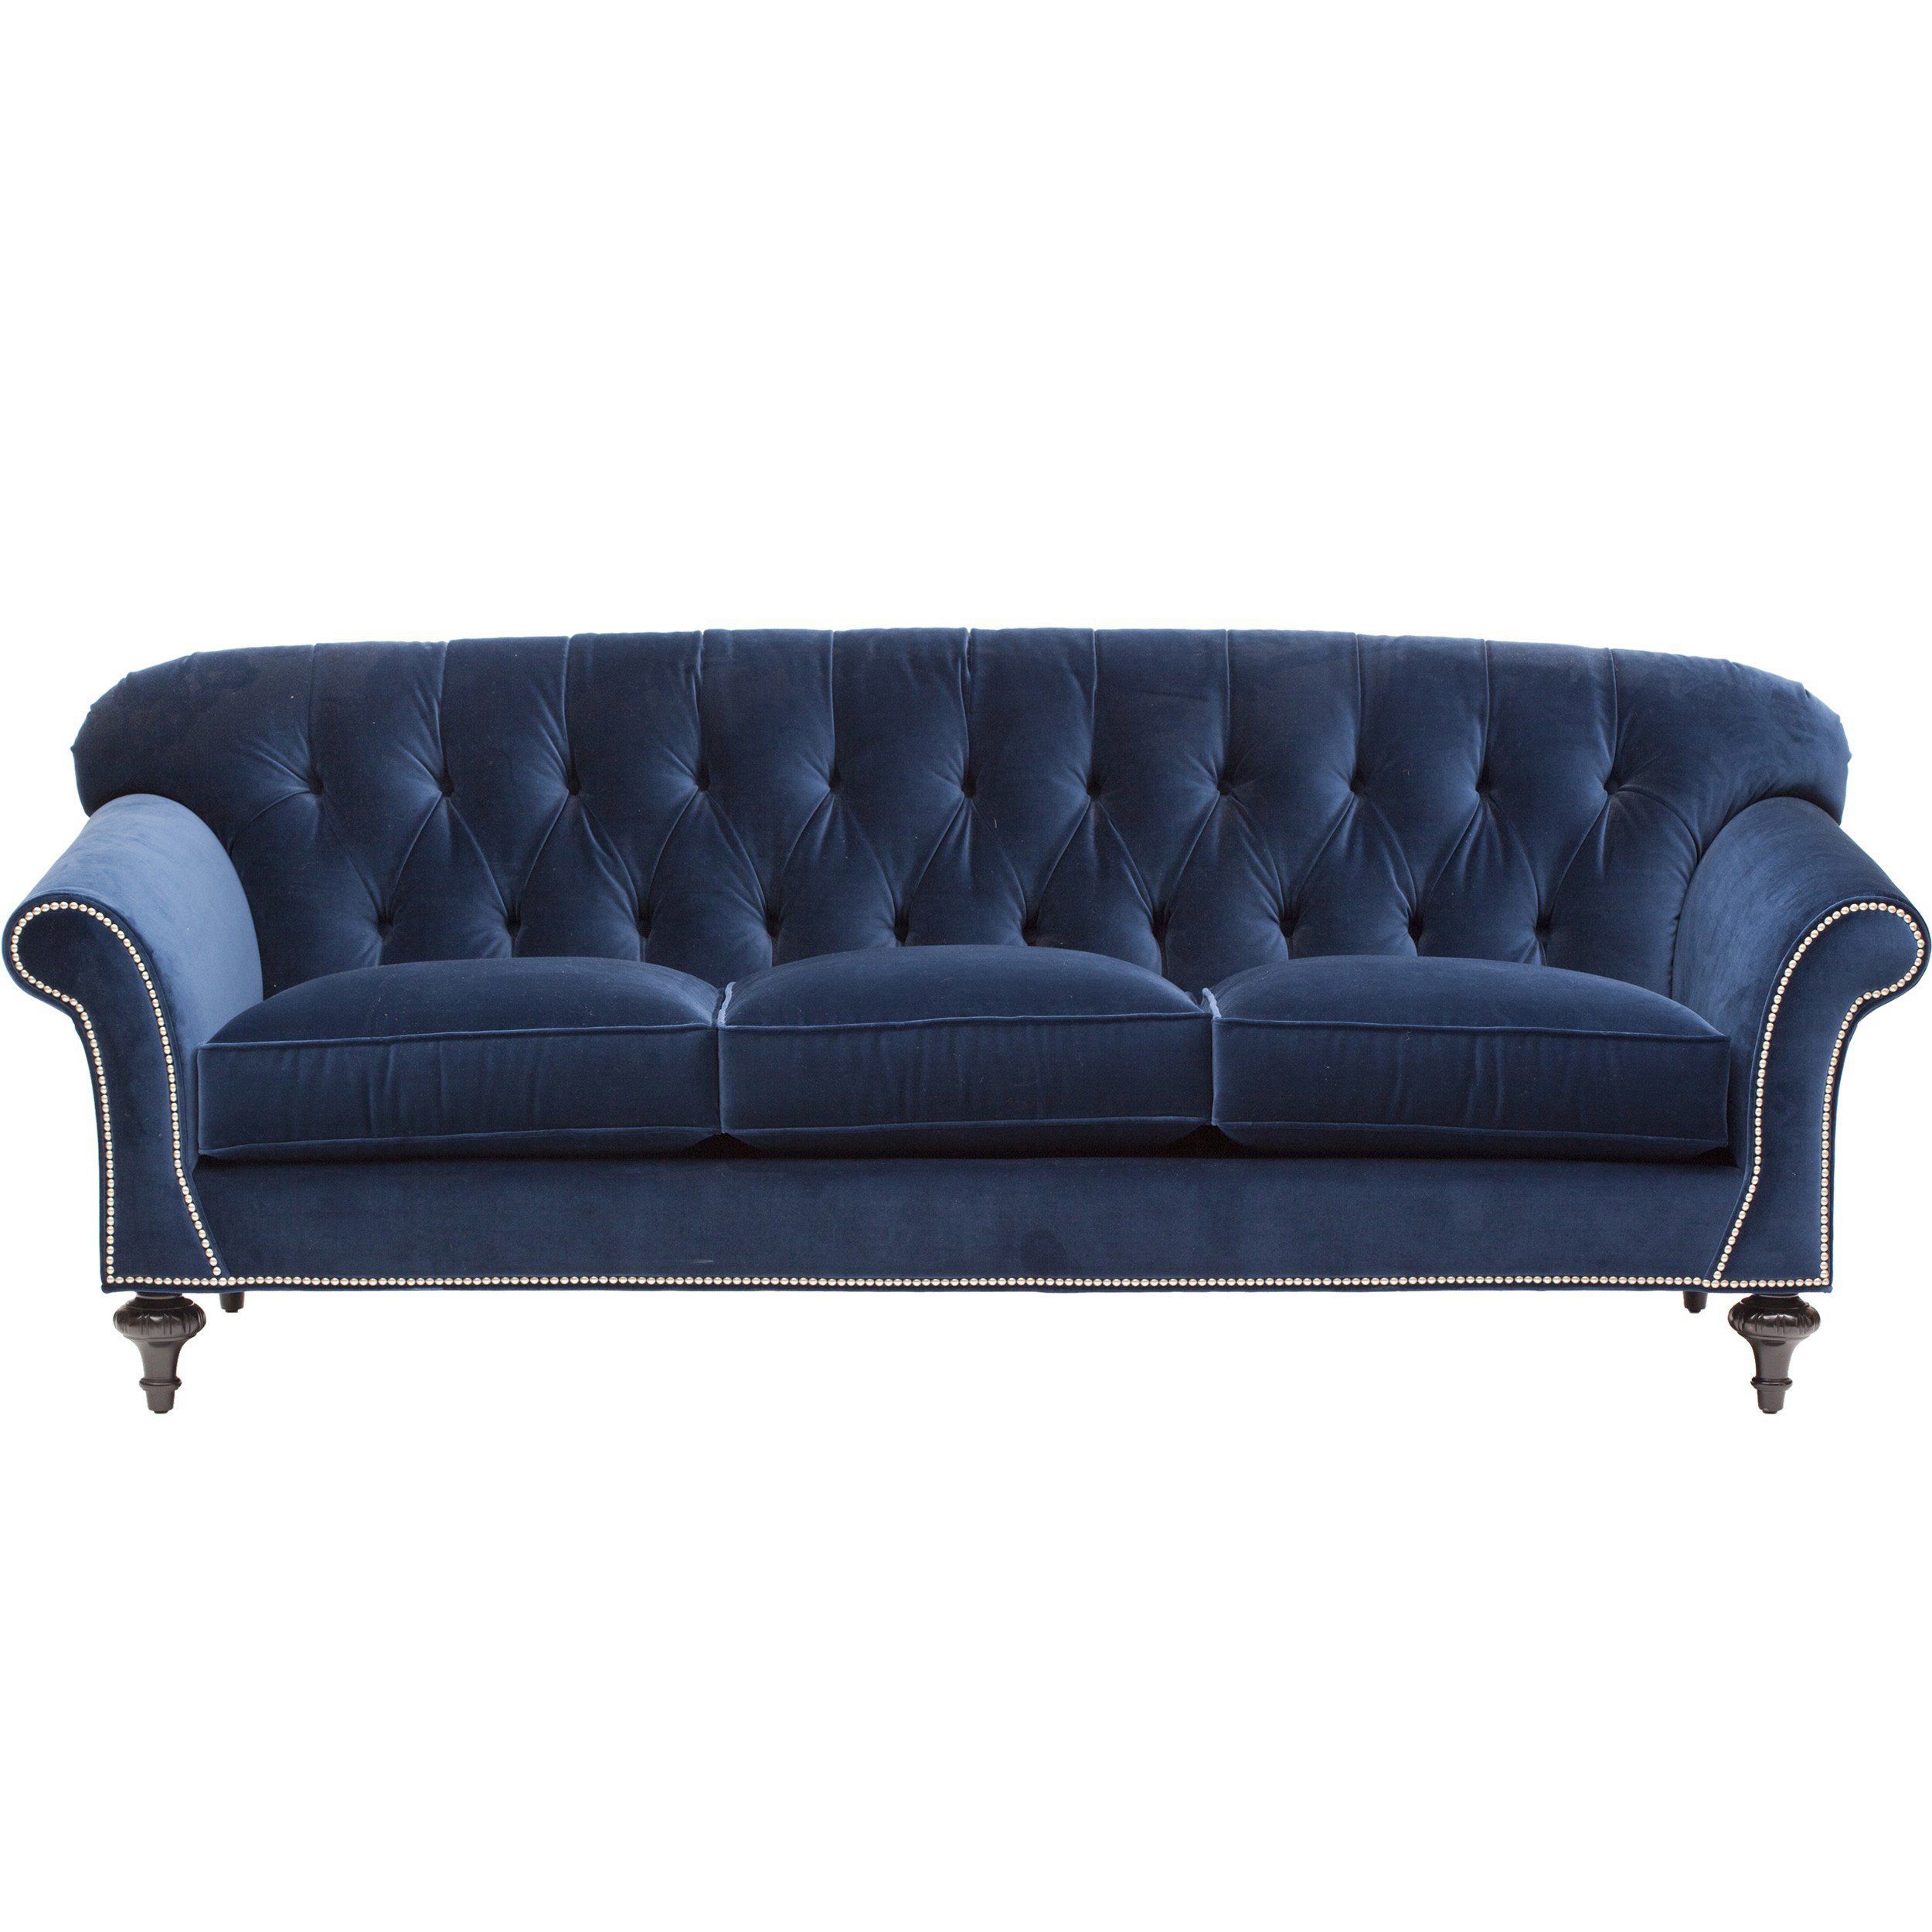 blue sofa 20 best blue sofas - stylish blue couch ideas QIGOWLN